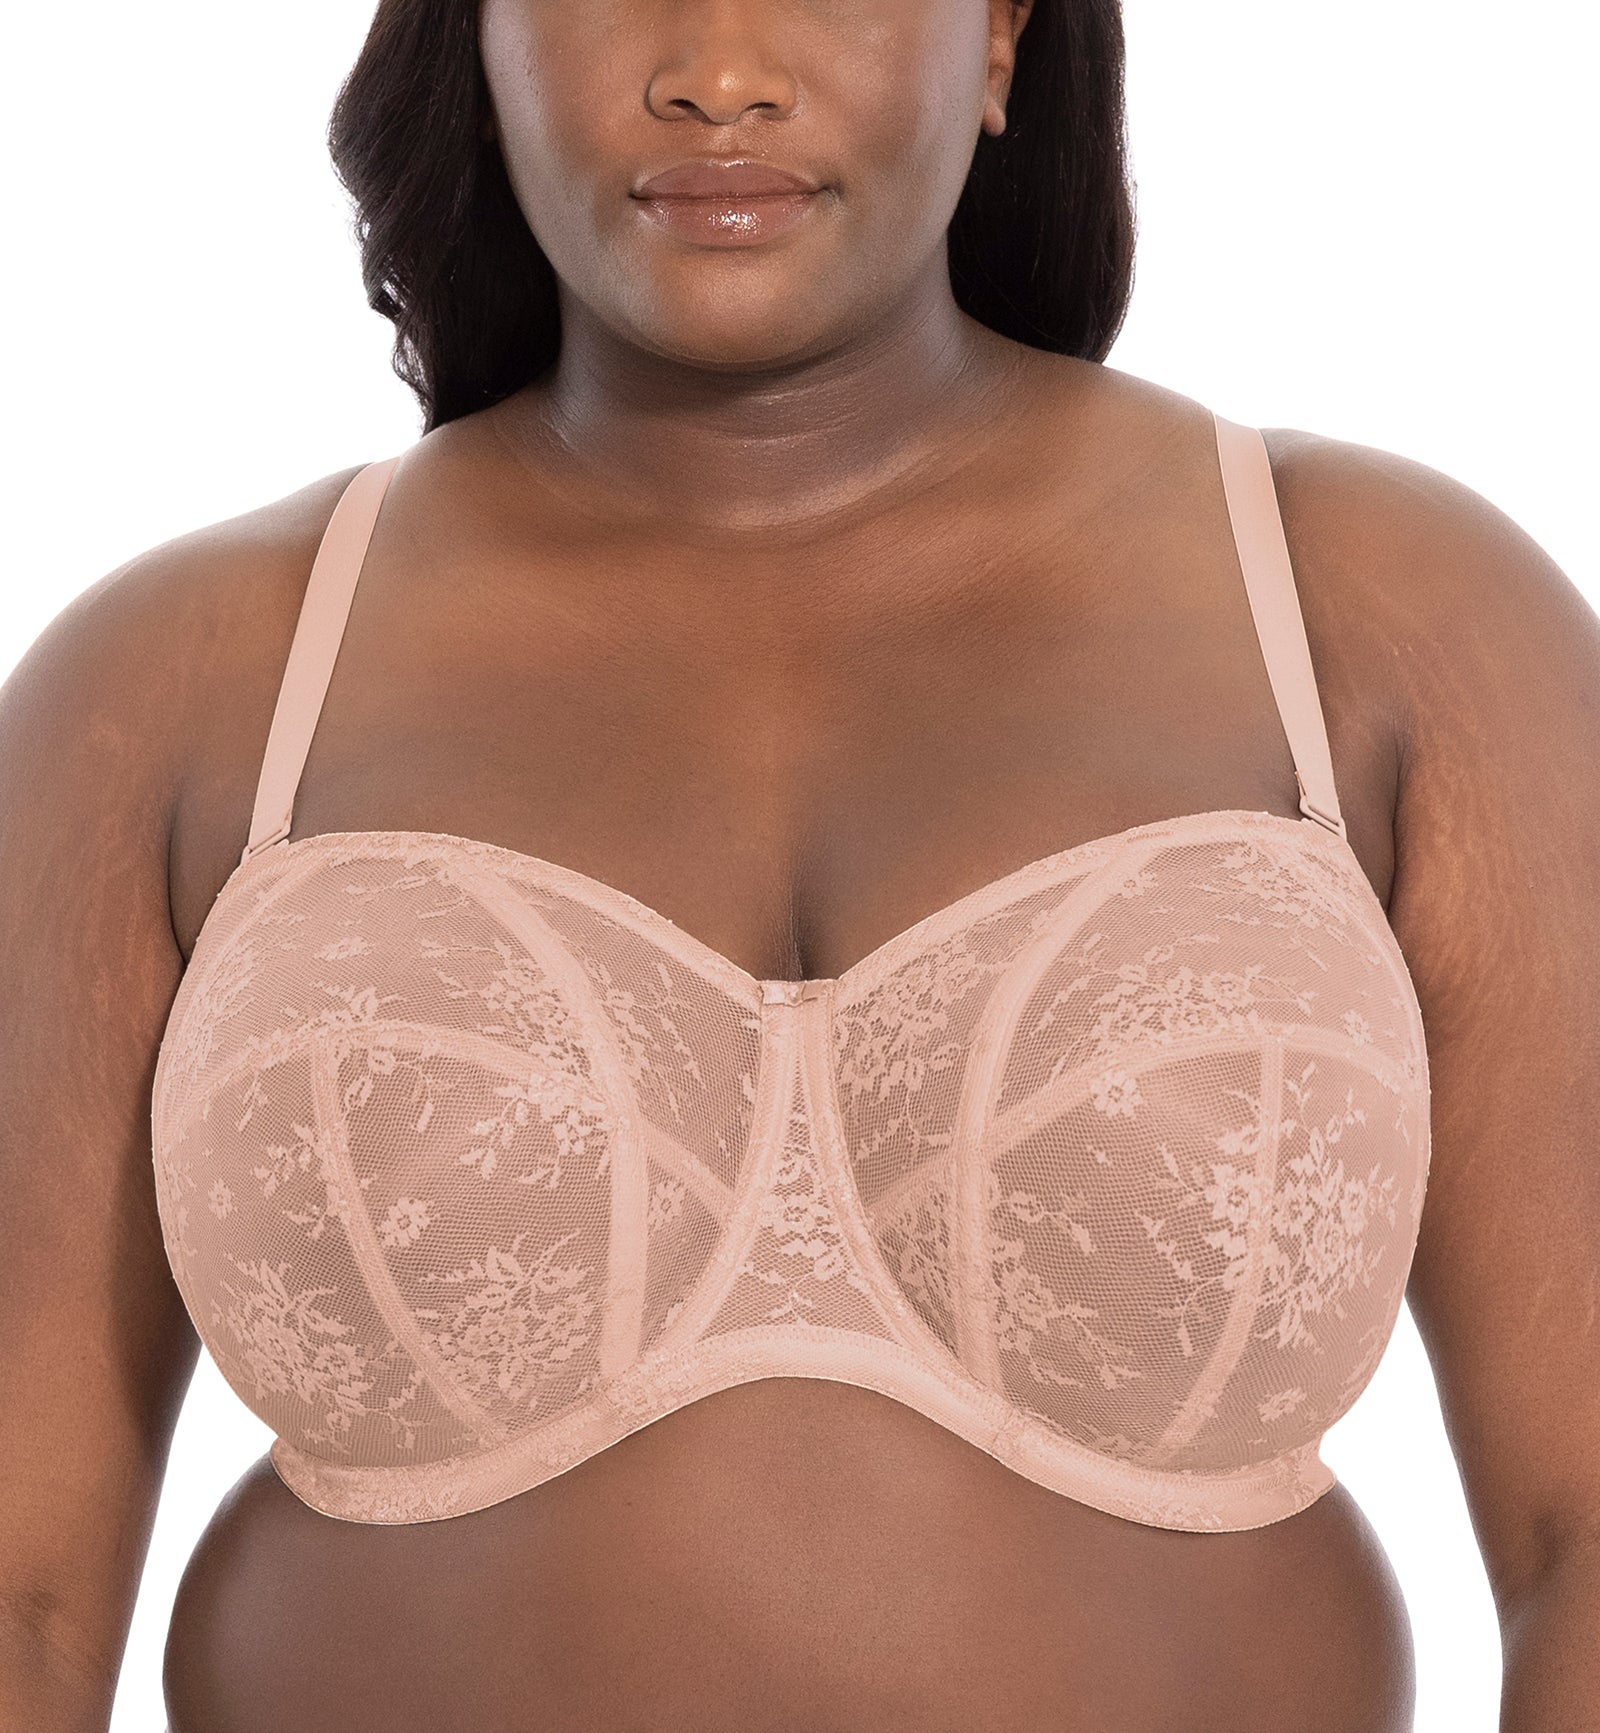 Our strapless bra saves lives! 🙌🏼 #bigbustbrands #brasandbriefs